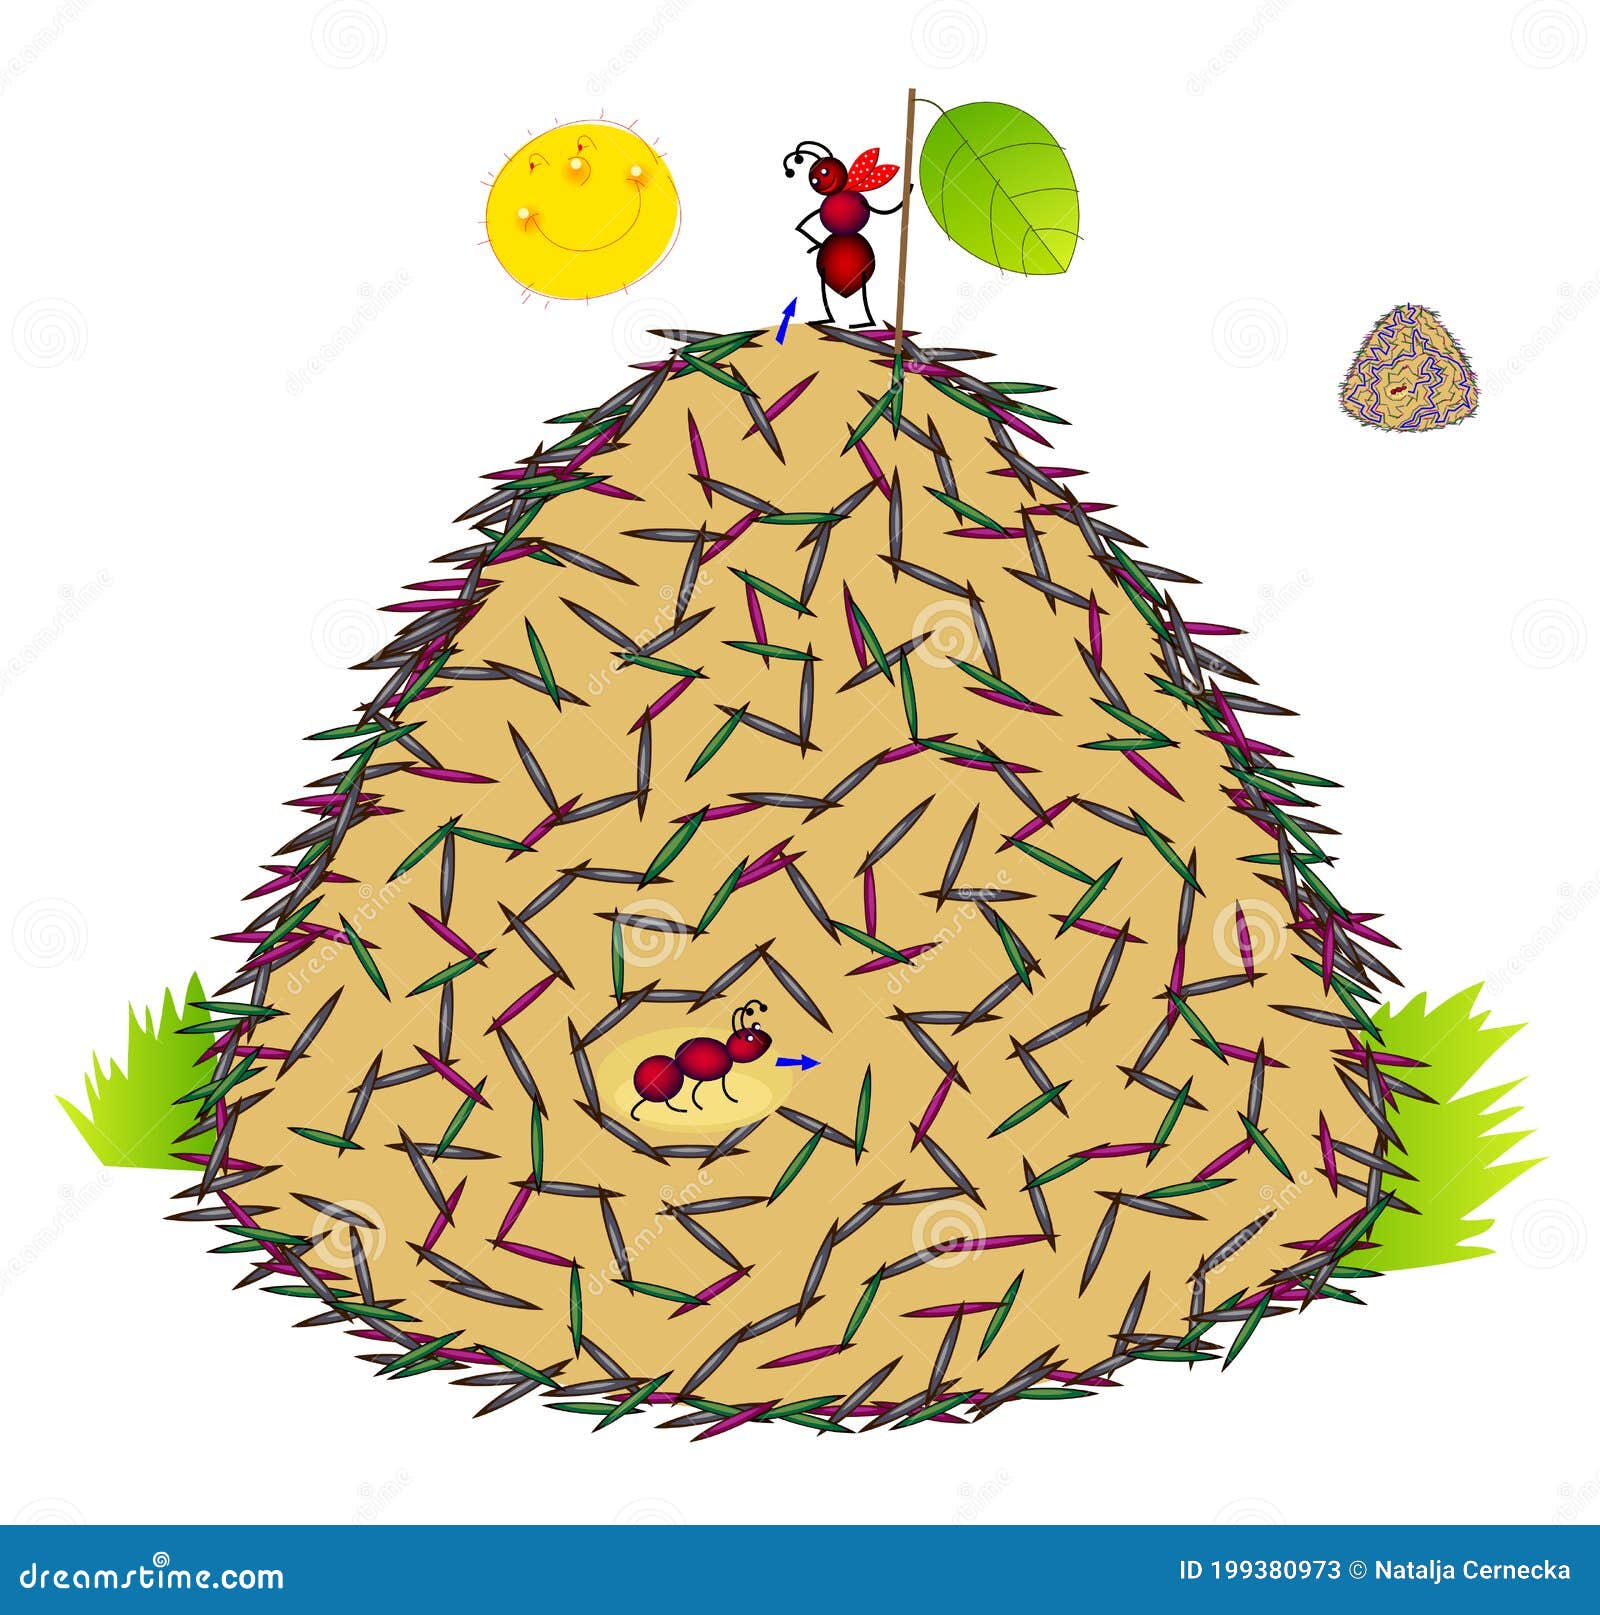 jogo educacional para crianças cortando prática e montando quebra-cabeça  com planilha de bug para impressão de formiga vermelha de desenho bonito  13696206 Vetor no Vecteezy